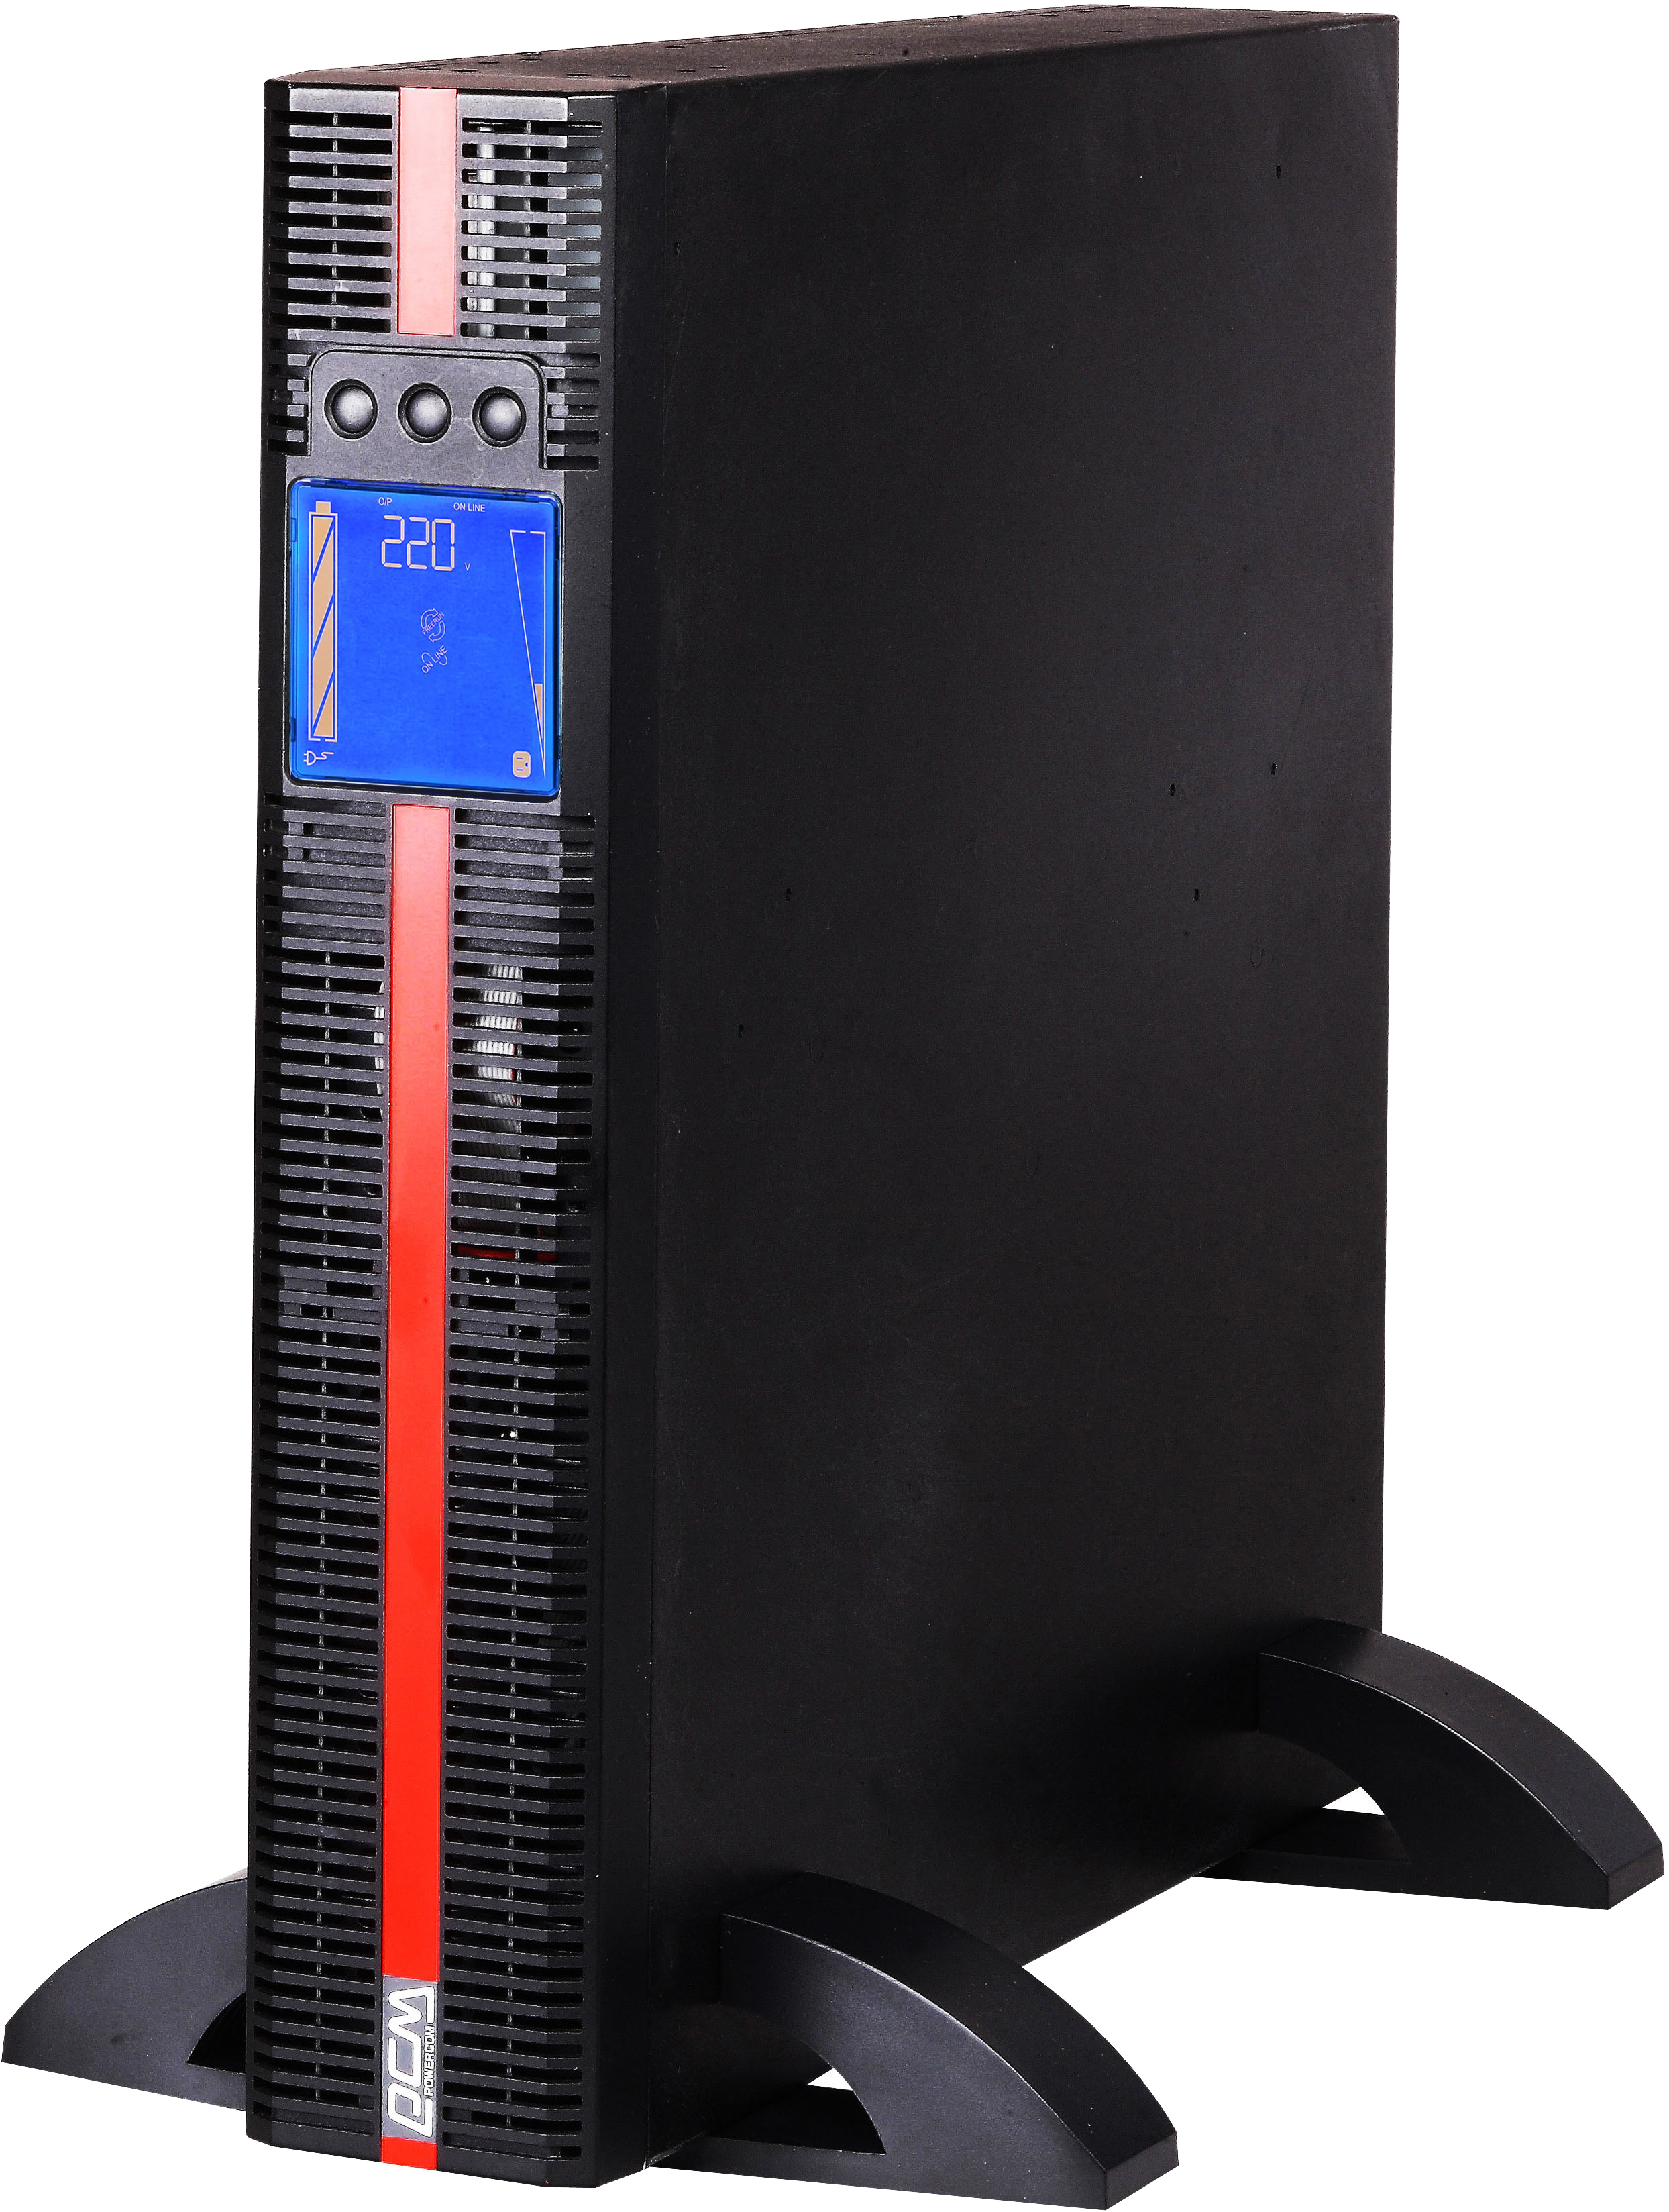 Отзывы источник бесперебойного питания Powercom MRT-1500 IEC 1500VA PF=1 online RS232 USB 4 IEC LCD в Украине